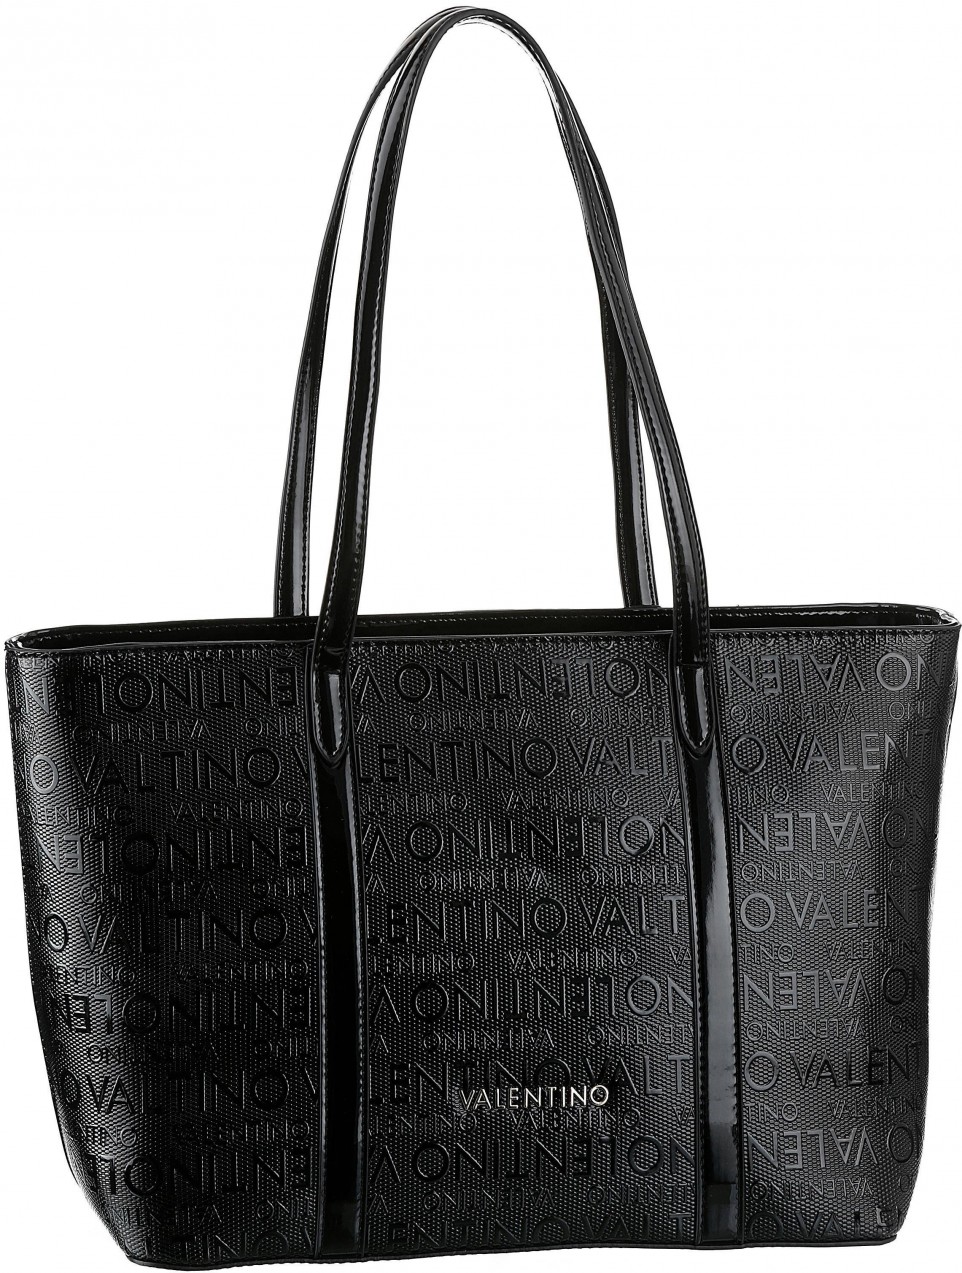 Valentino handbags shopper táska »SERENITY« Valentino Handbags tűzvörös 45 x 27 x 14 cm